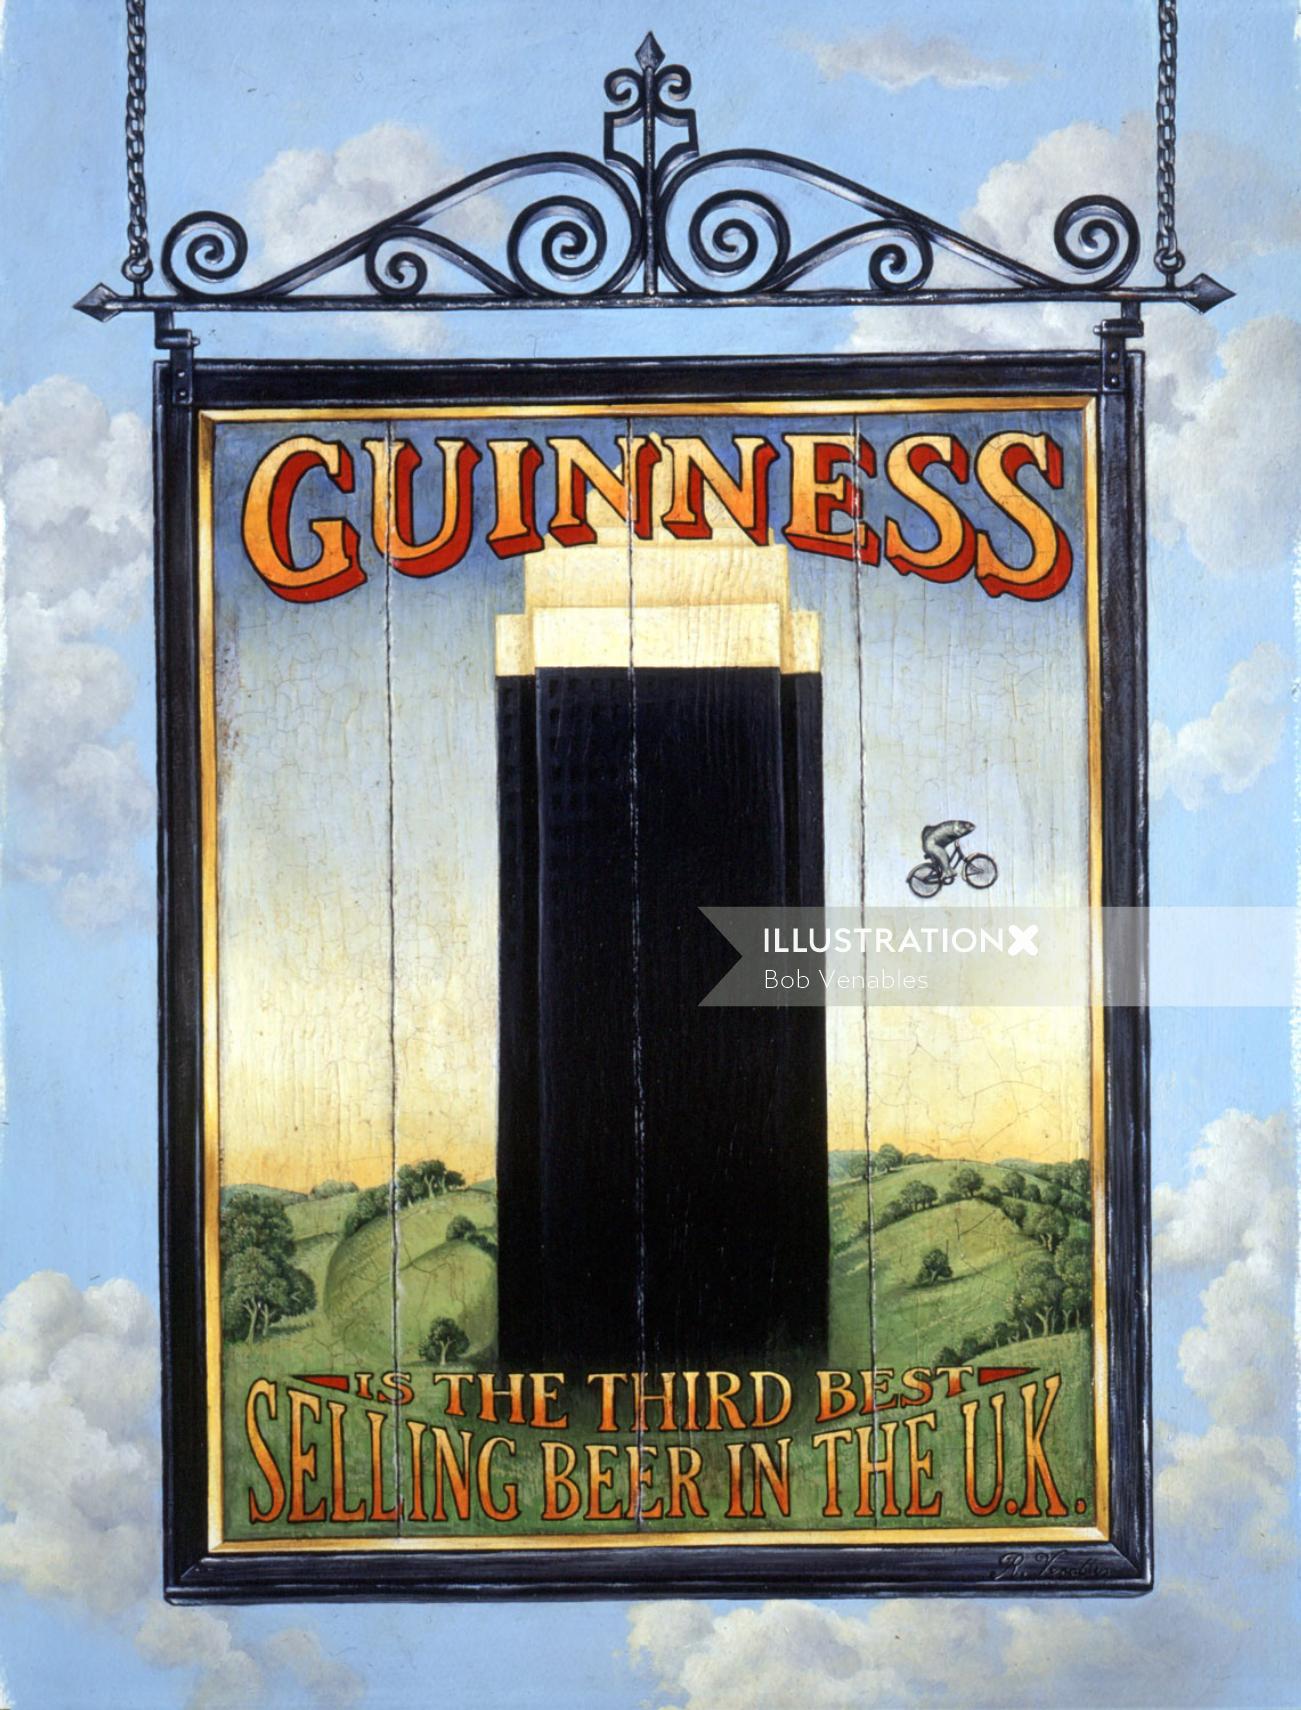 キャンペーンポスターギネス英国で3番目に売れているビール